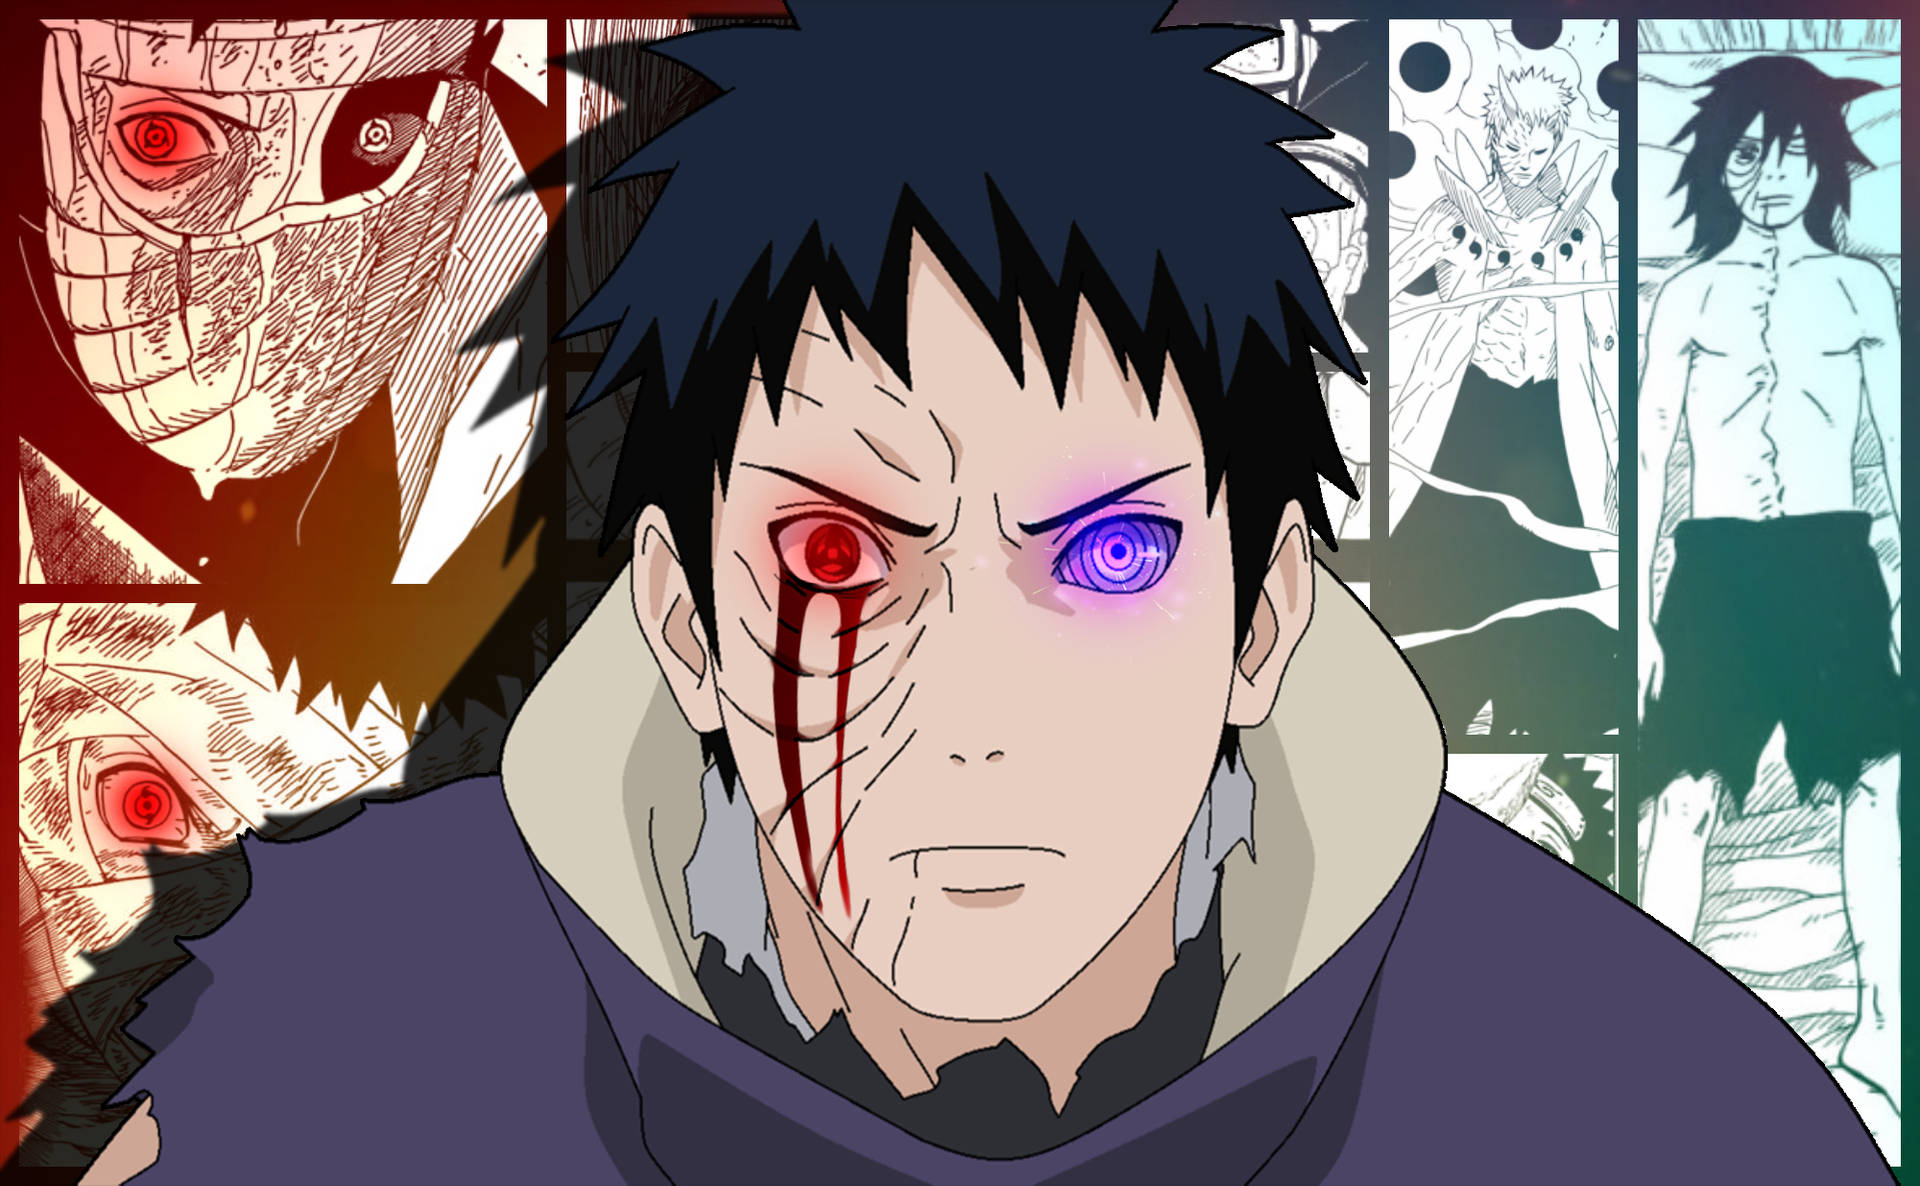 Scroll 4: The Third Uchiha [Naruto] - Chapter 1: Rin Uchiha